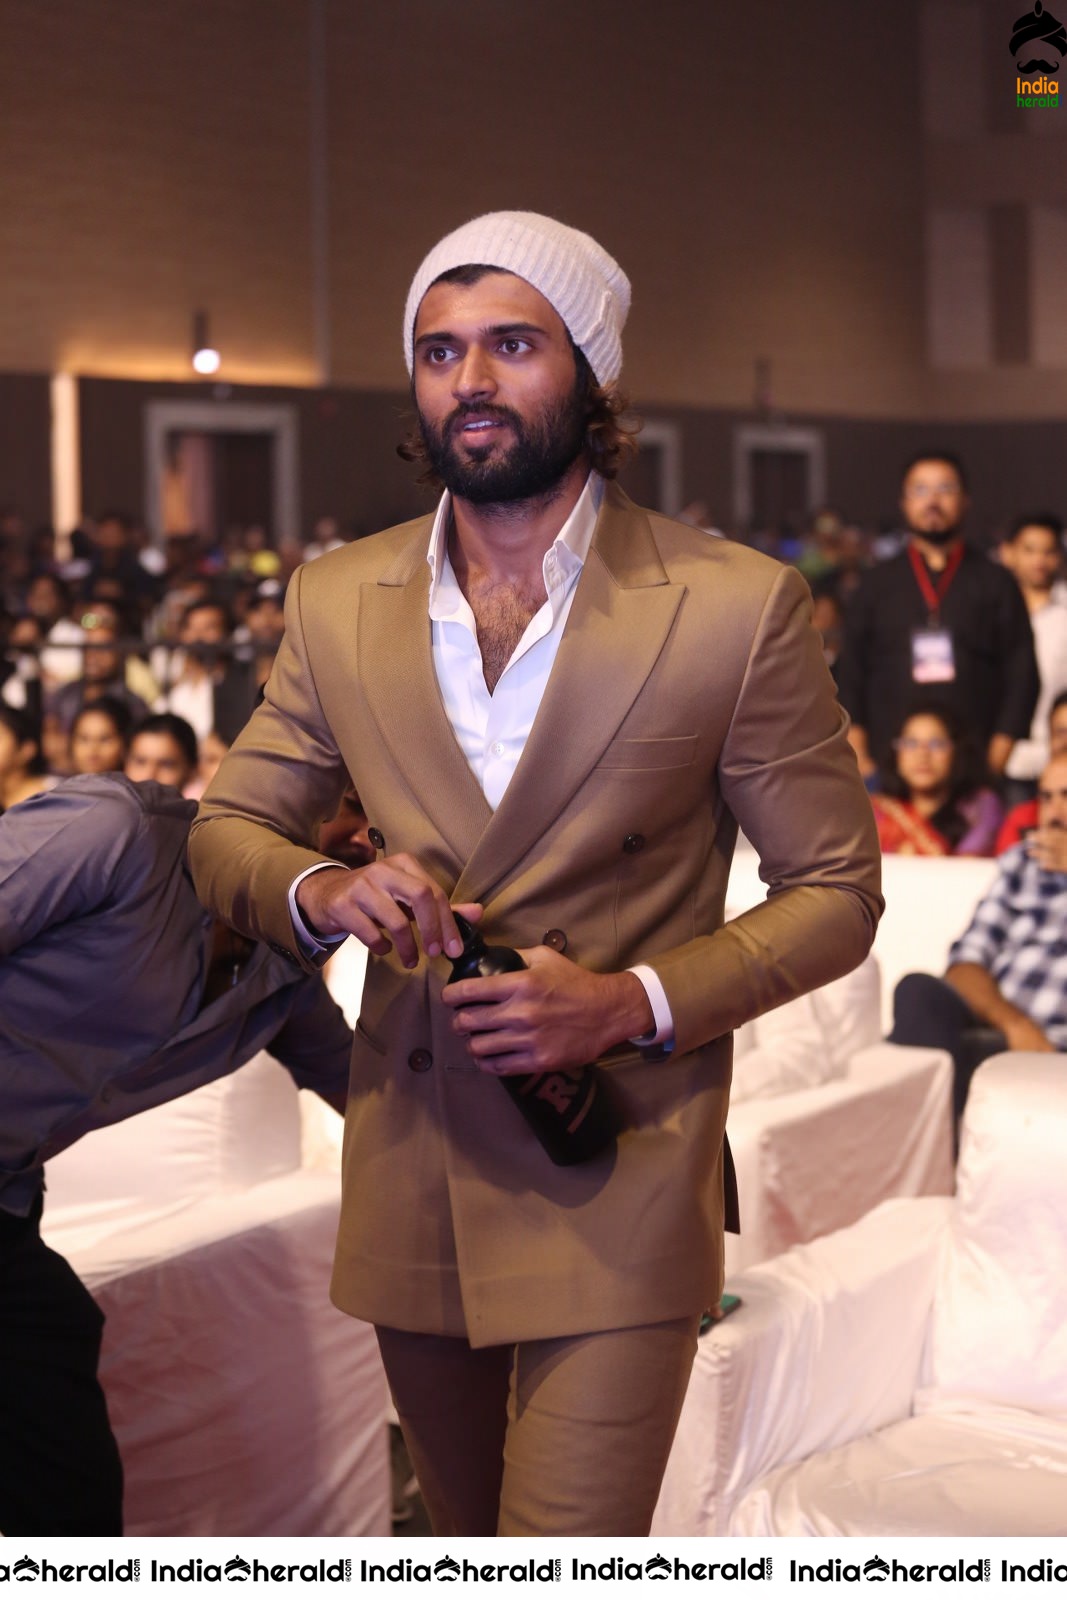 Actor Vijay Deverakonda gets a Warm welcome at WFL event